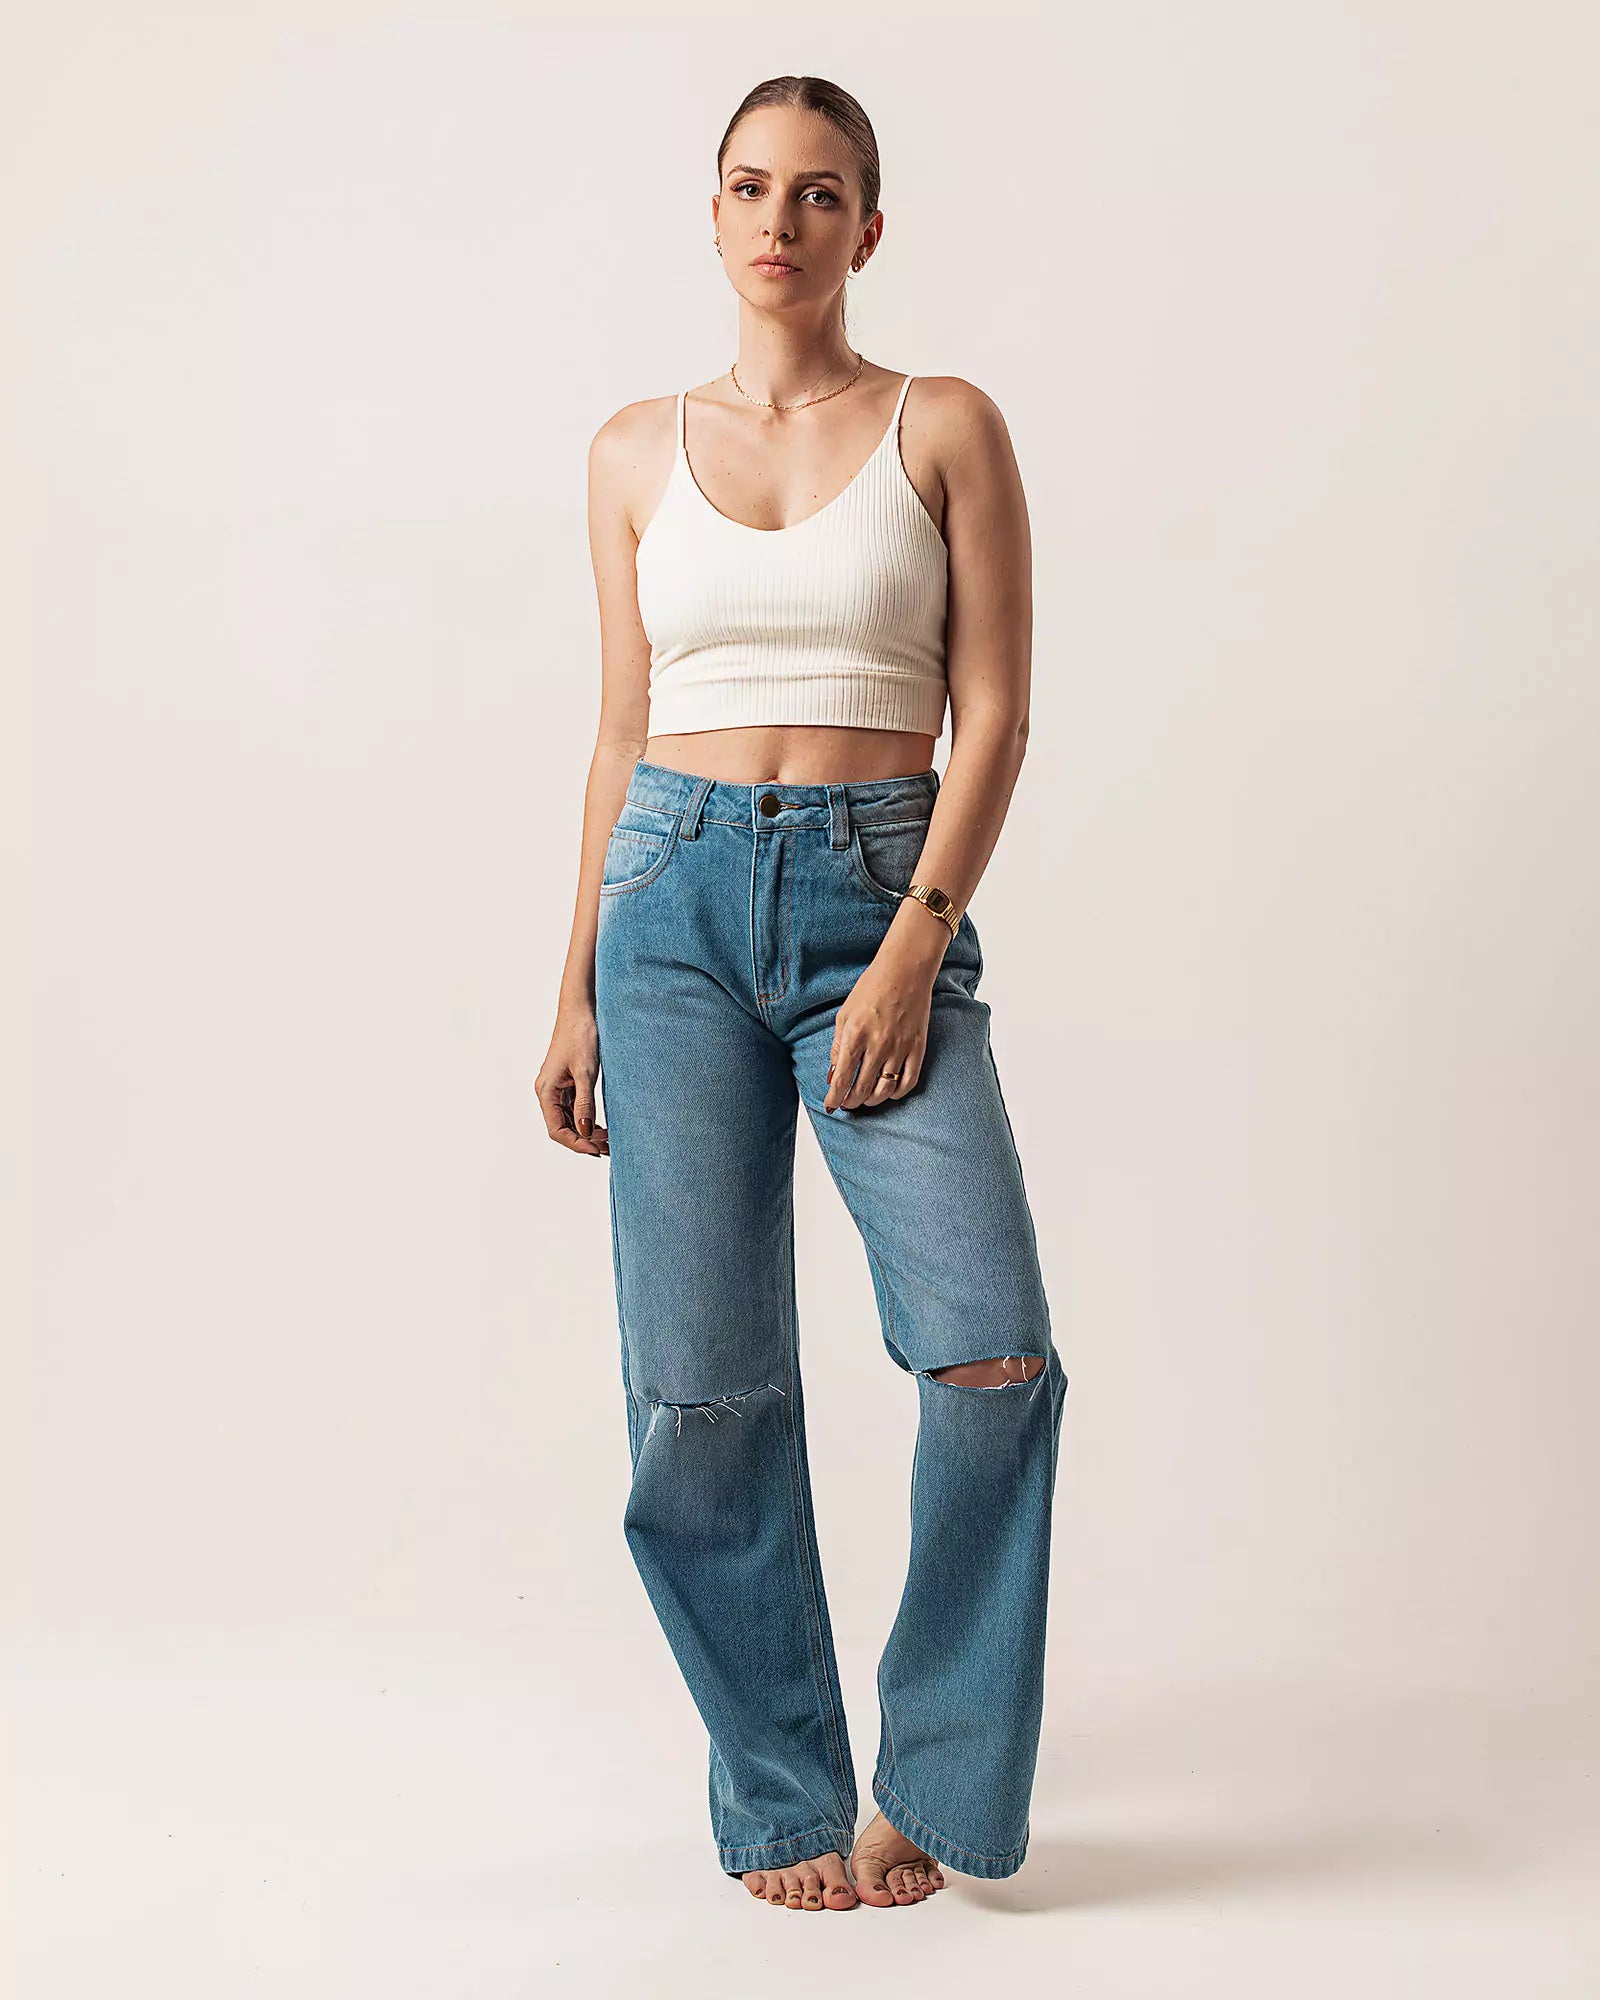 Calça Wide Leg com Rasgos Jeans Azul Médio Eco Denim™. Compre online moda sustentável e atemporal na Minimadeia. Roupas femininas estilosas, básicas e sustentáveis. Foto produto 01